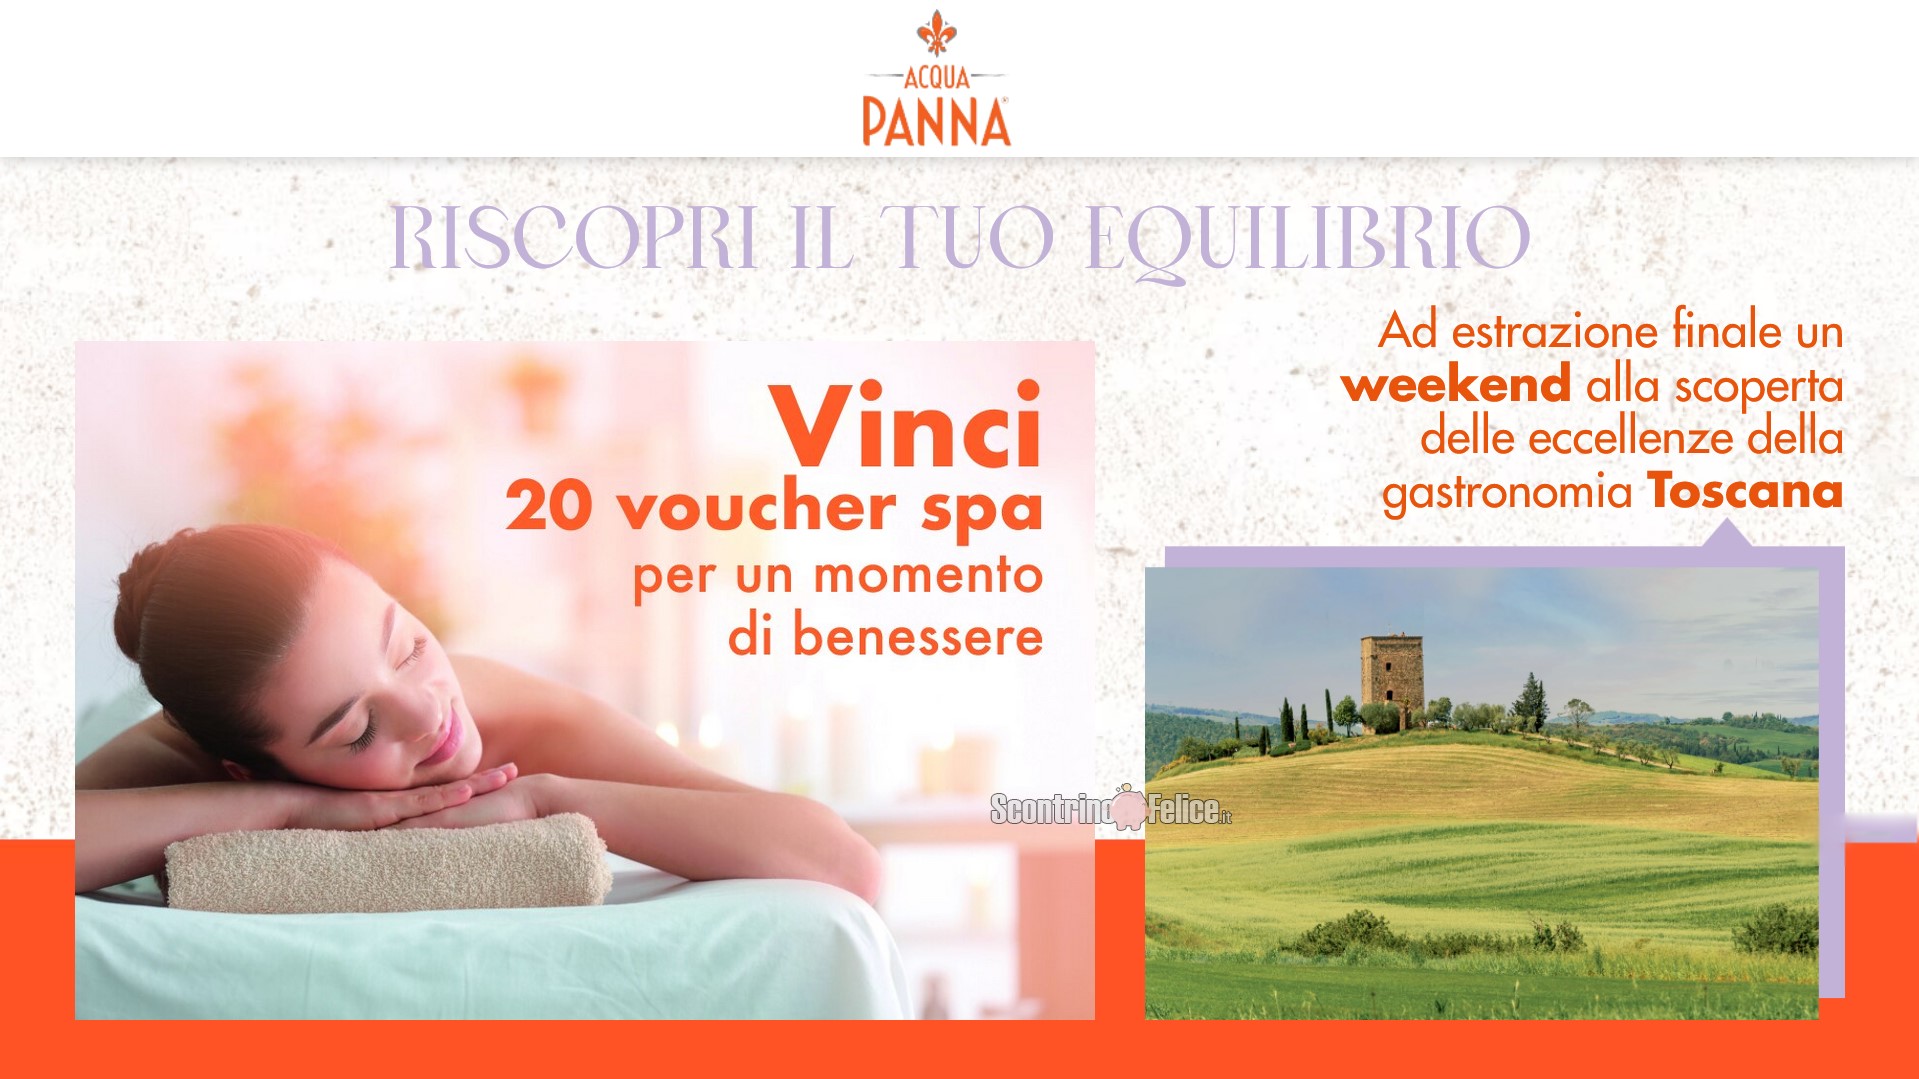 Concorso Acqua Panna "Riscopri il tuo equilibrio": vinci voucher SPA e weekend in Toscana